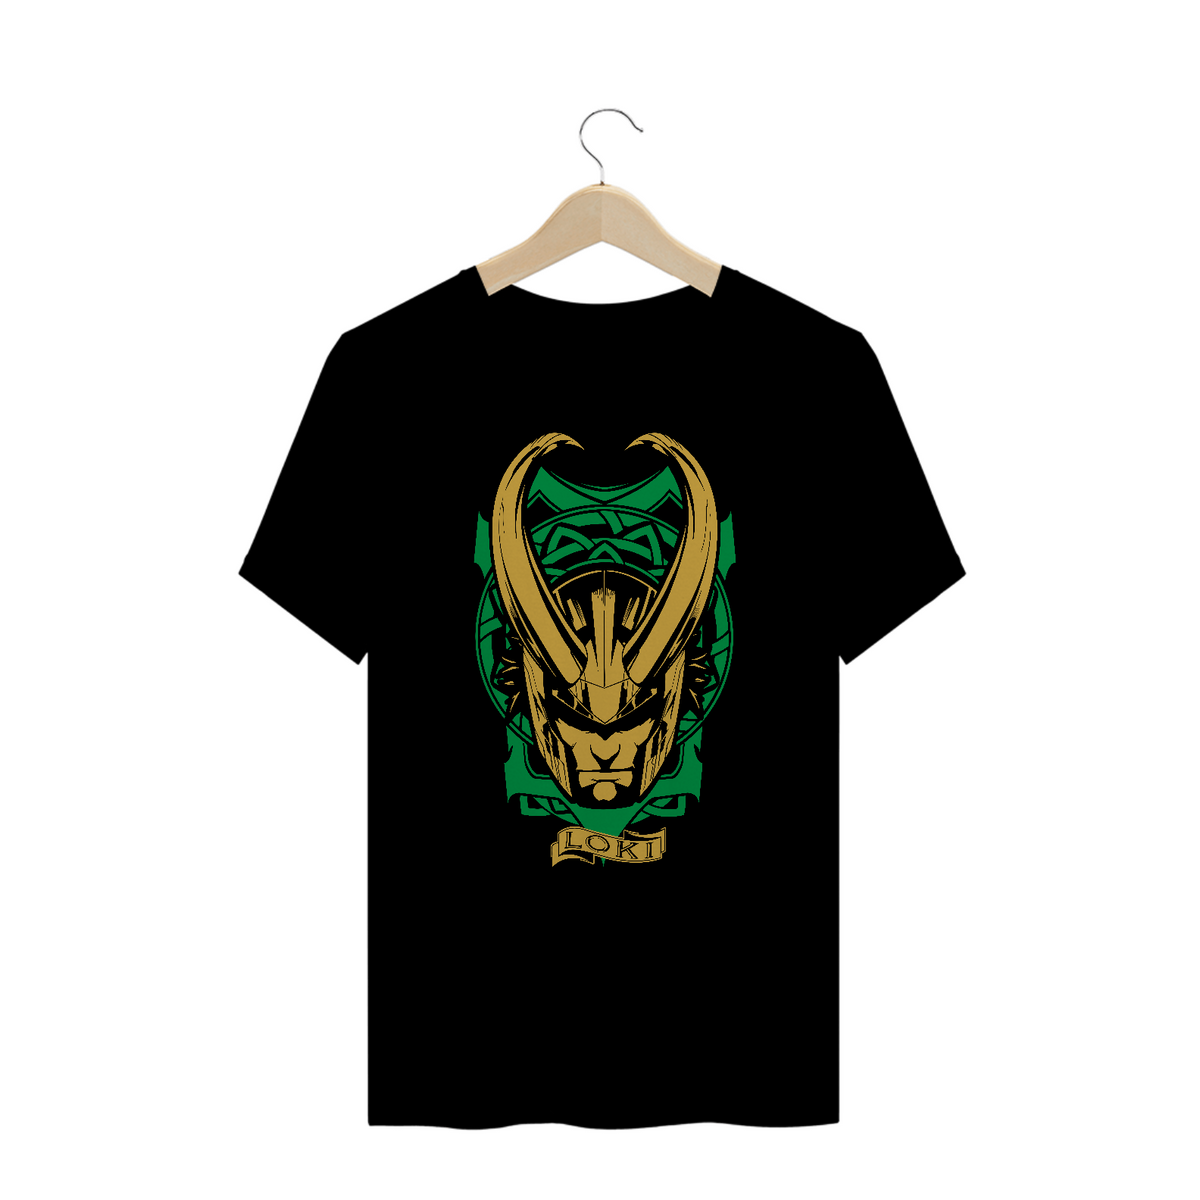 Nome do produto: Camiseta Plus Size Loki Avengers Duo